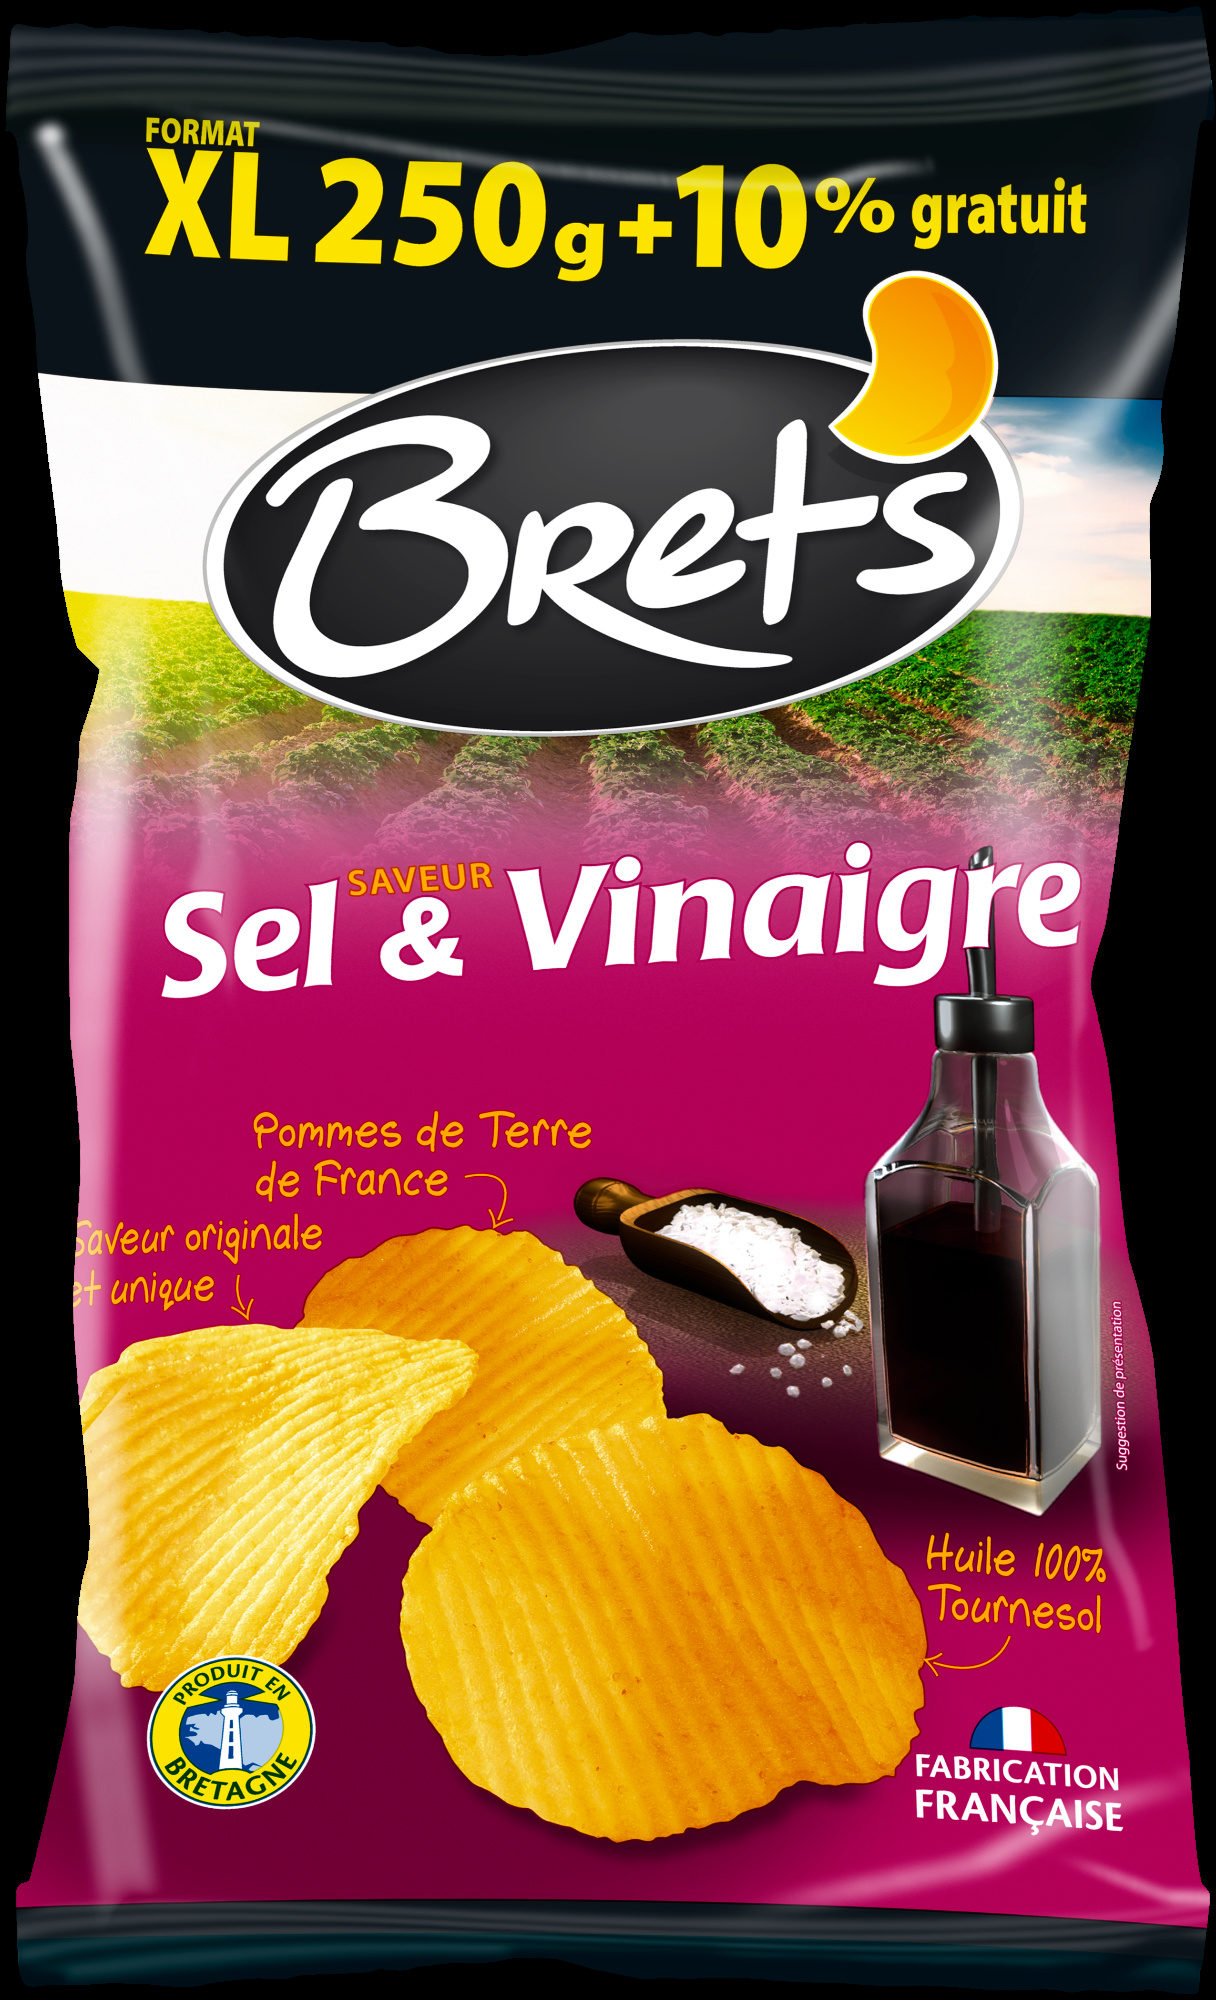 Chips saveur saveur sel & vinaigre (format XL +10% gratuit) - Produit